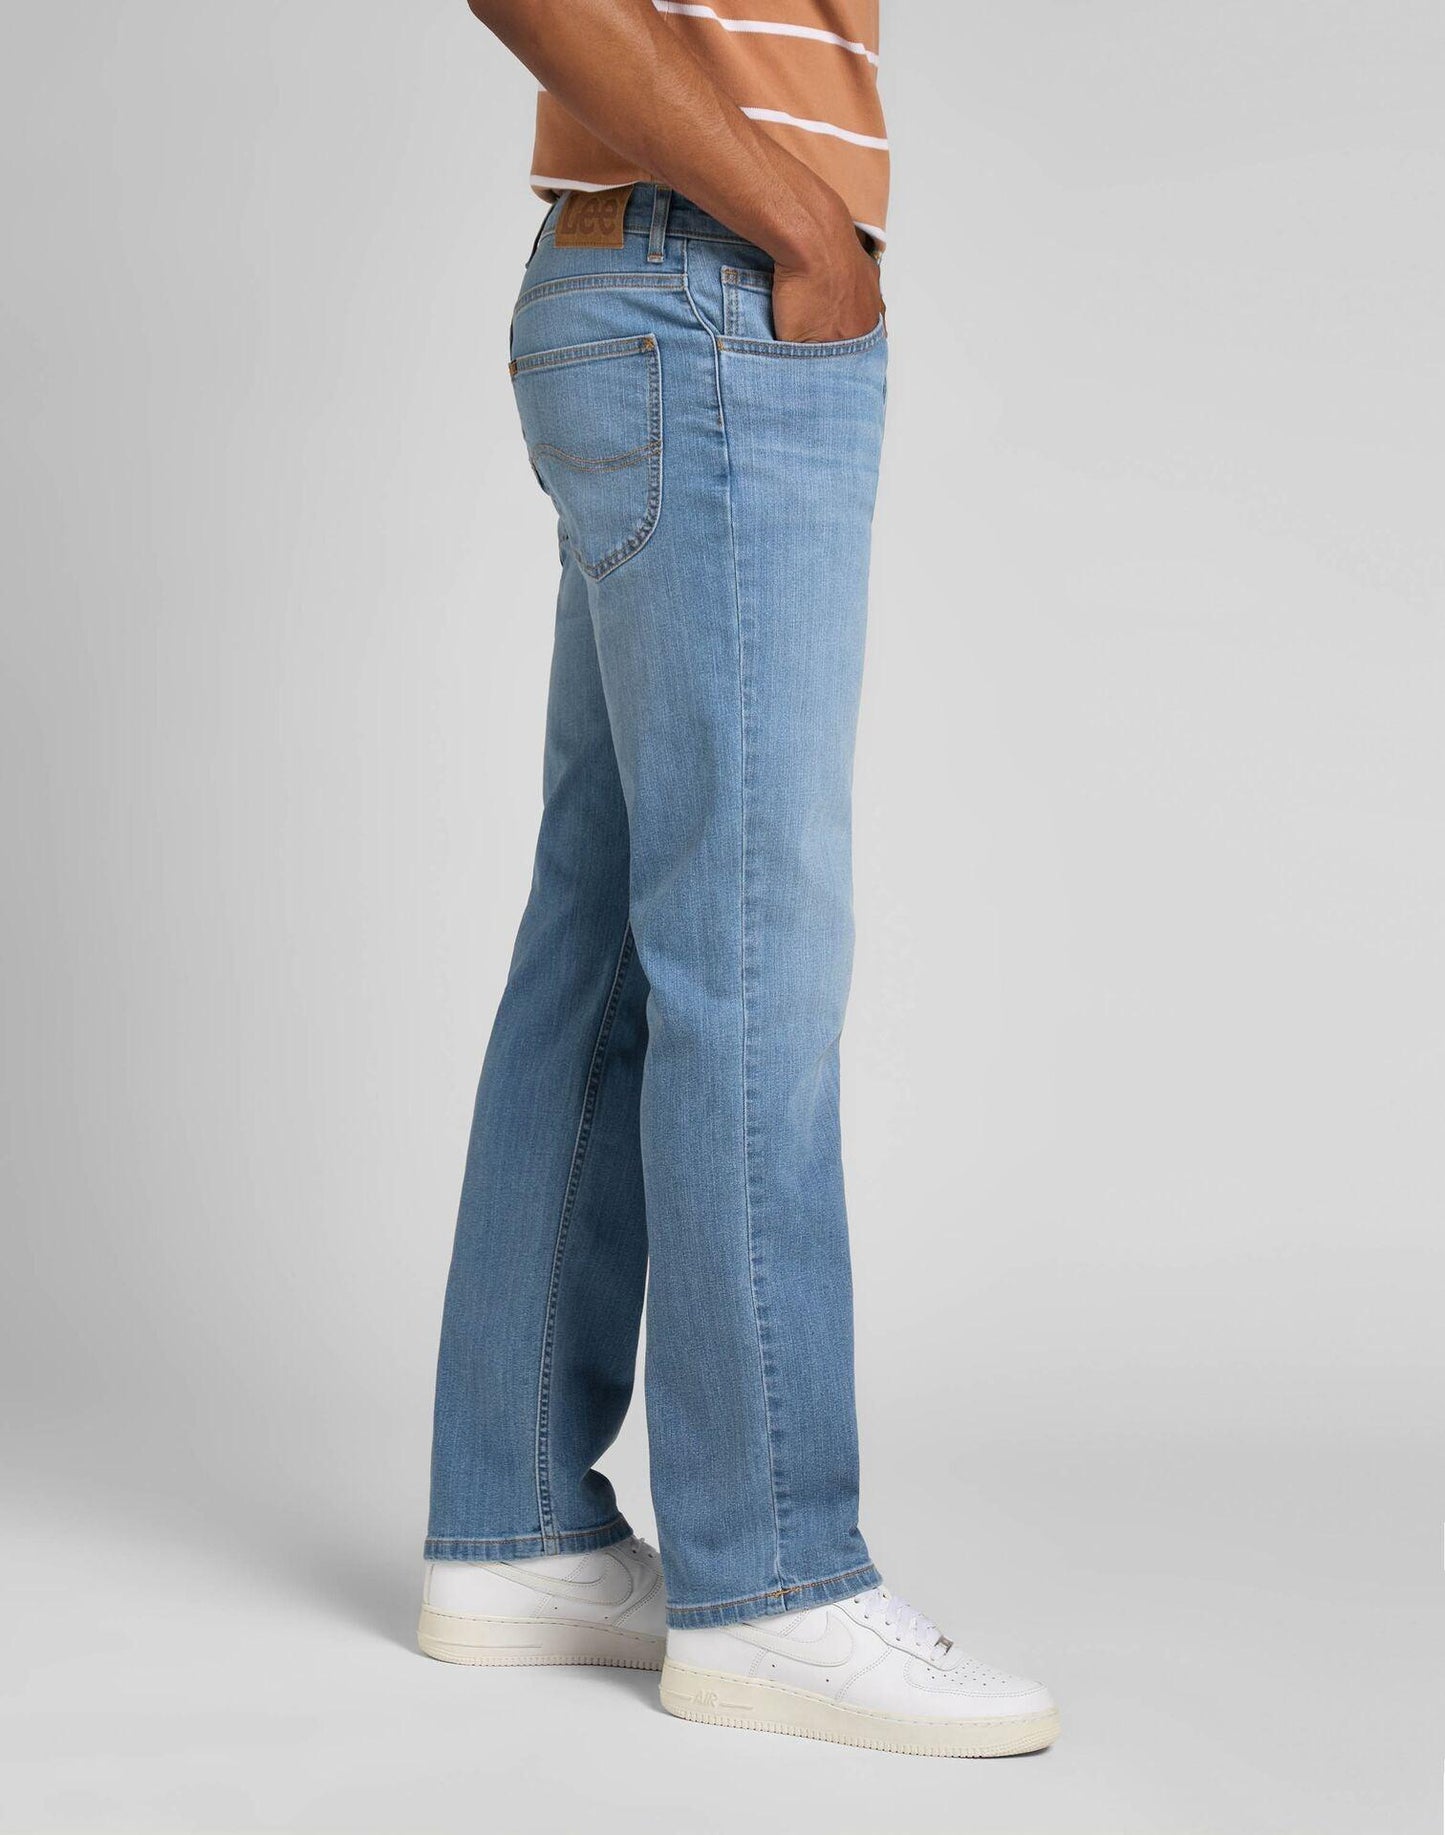 LEE - ג'ינס BROOKLYN בצבע כחול - MASHBIR//365